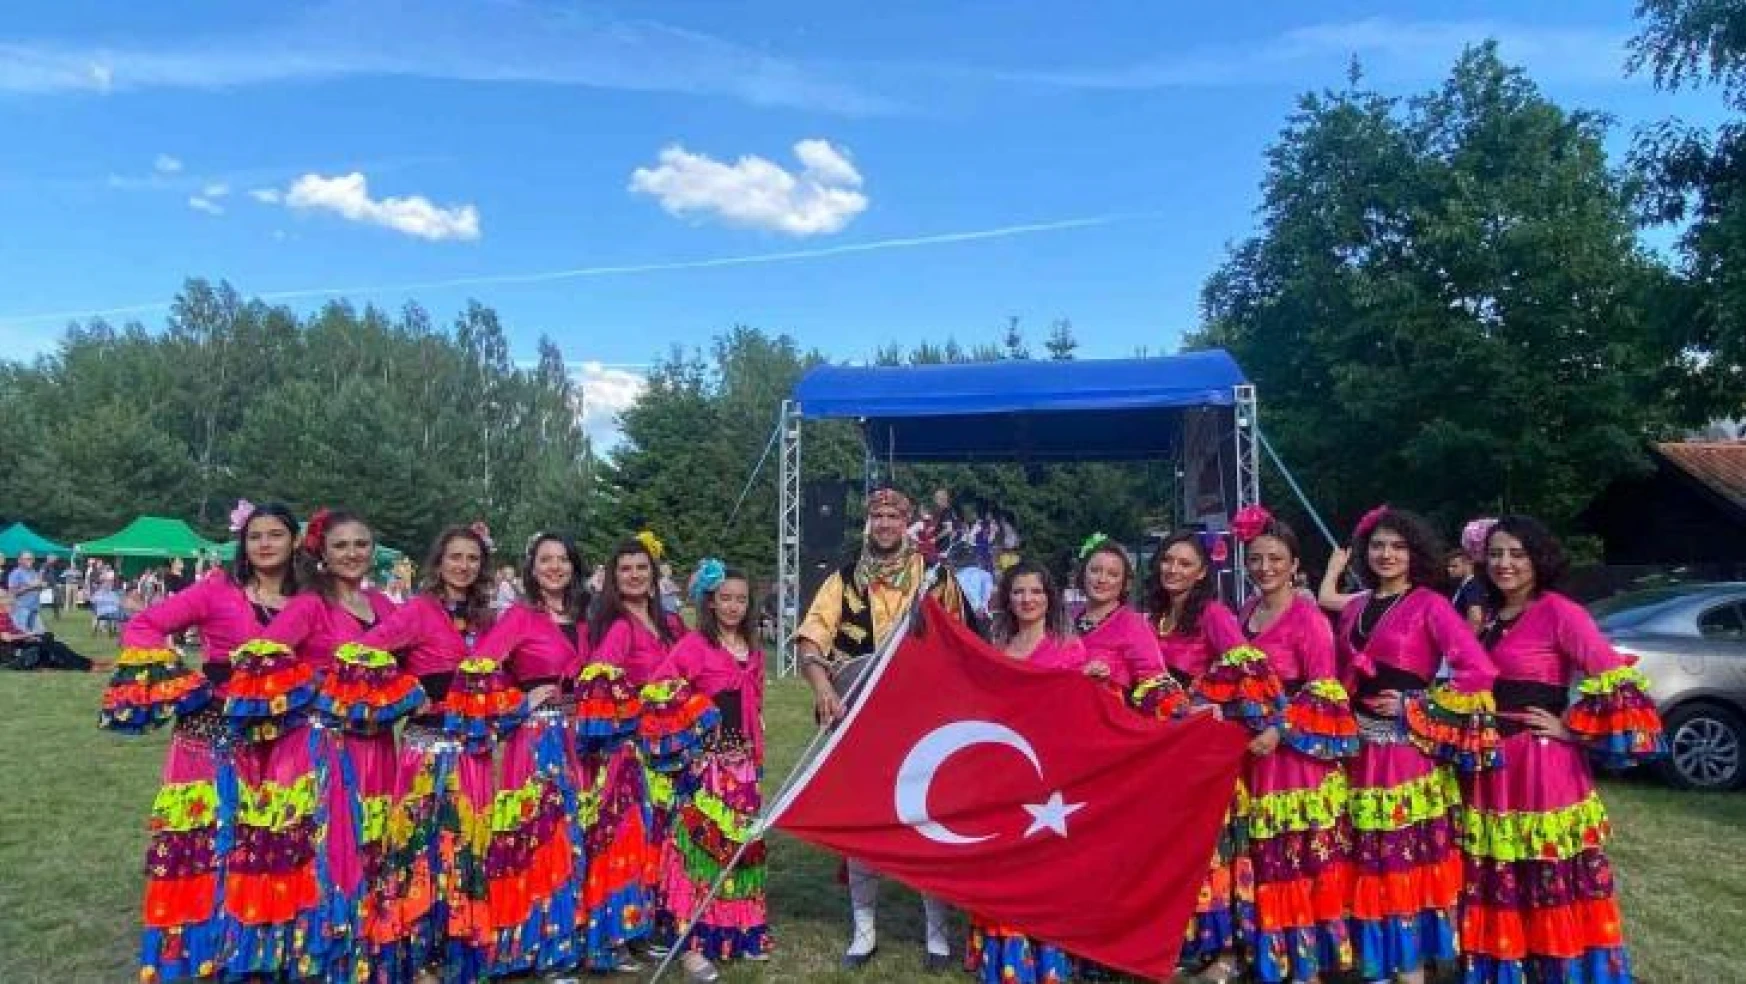 Türk folklorcular Polonya'da büyük ilgi gördü